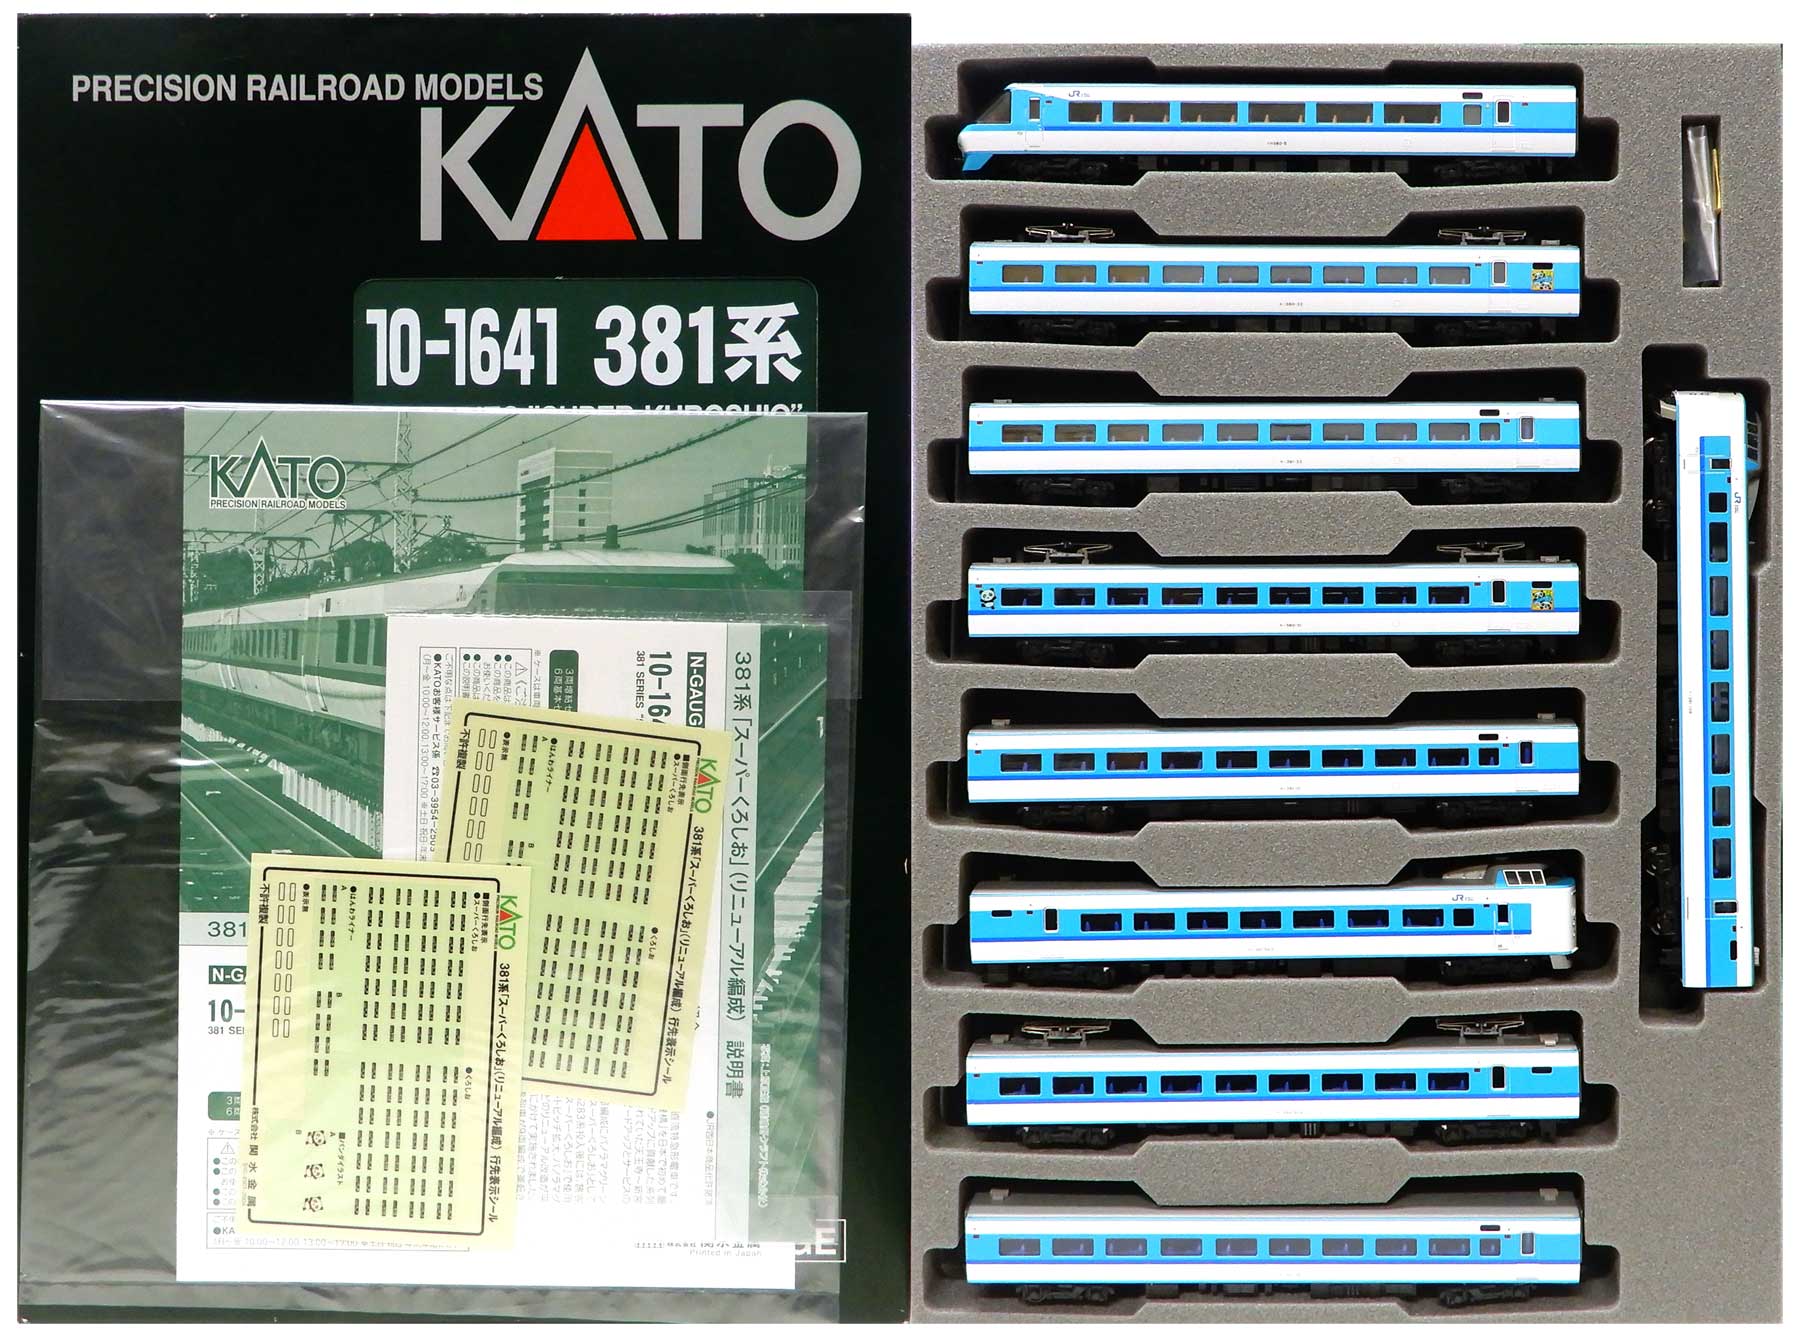 KATO 10-1641 381系 スーパーくろしお 9両フル編成セット - 鉄道模型